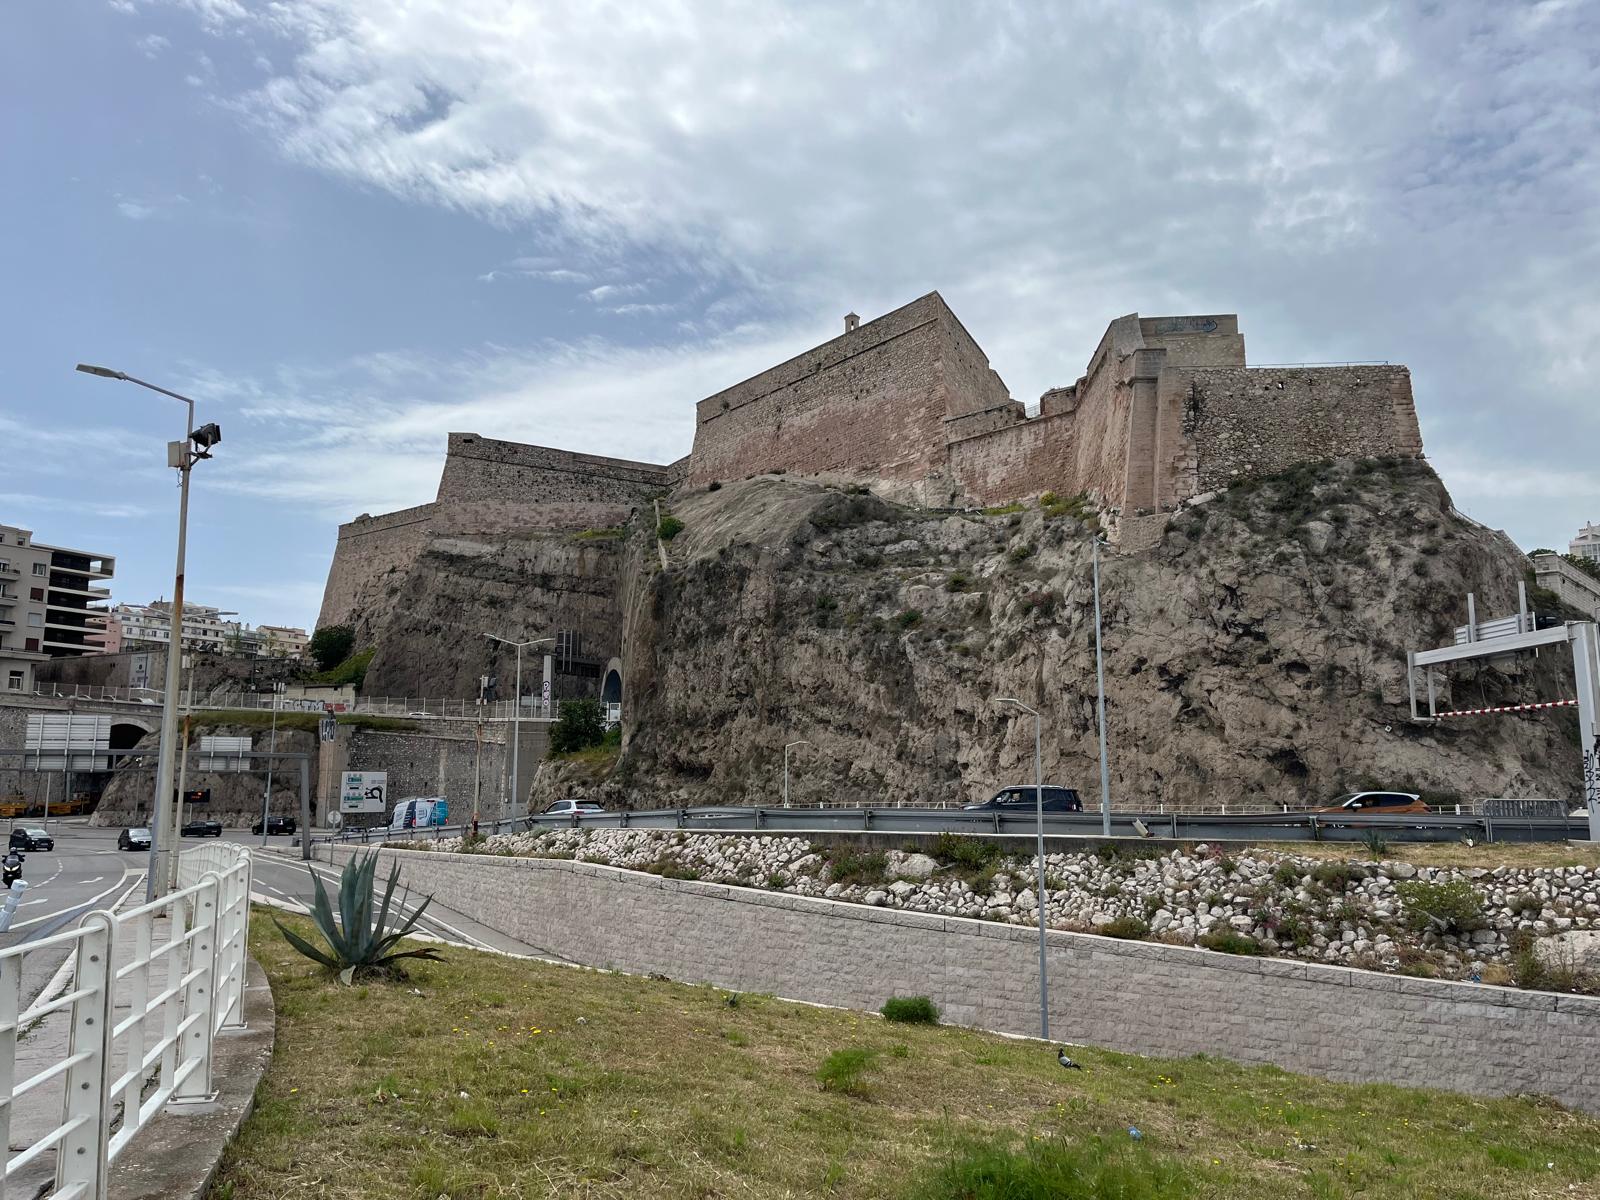 Marseille : après 360 ans de fermeture, le fort d’Entrecasteaux ouvre ses portes